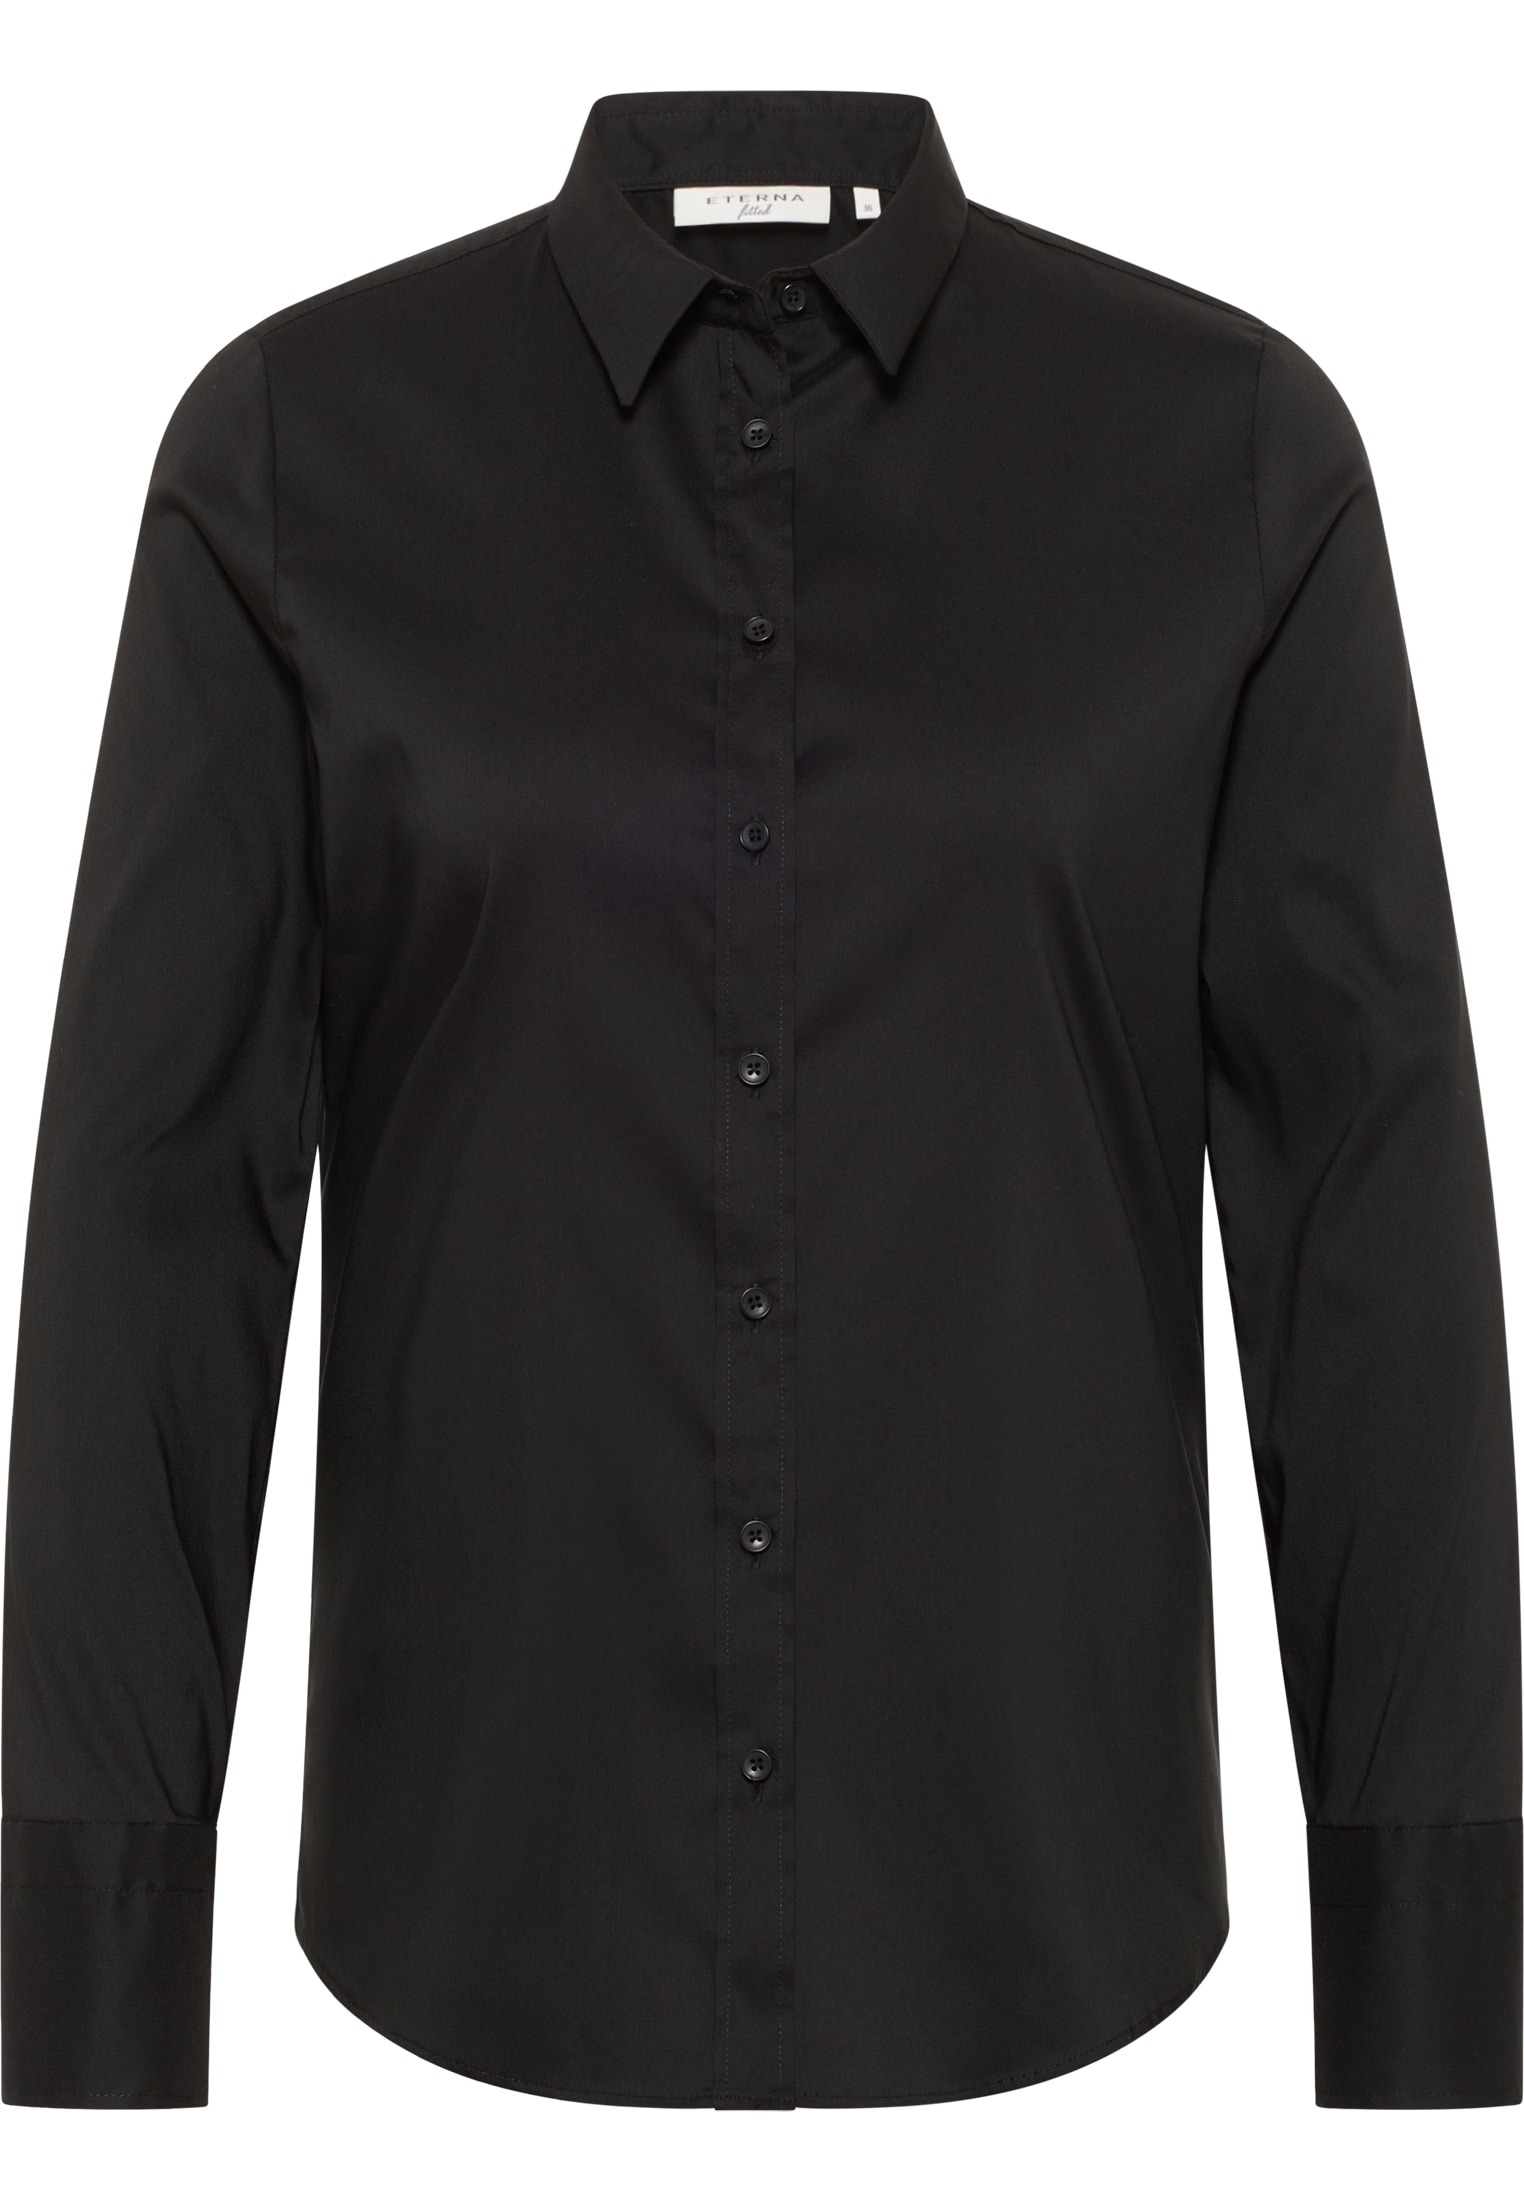 Performance Shirt Bluse in schwarz | schwarz | Langarm unifarben | 40 | 2BL00441-03-91-40-1/1